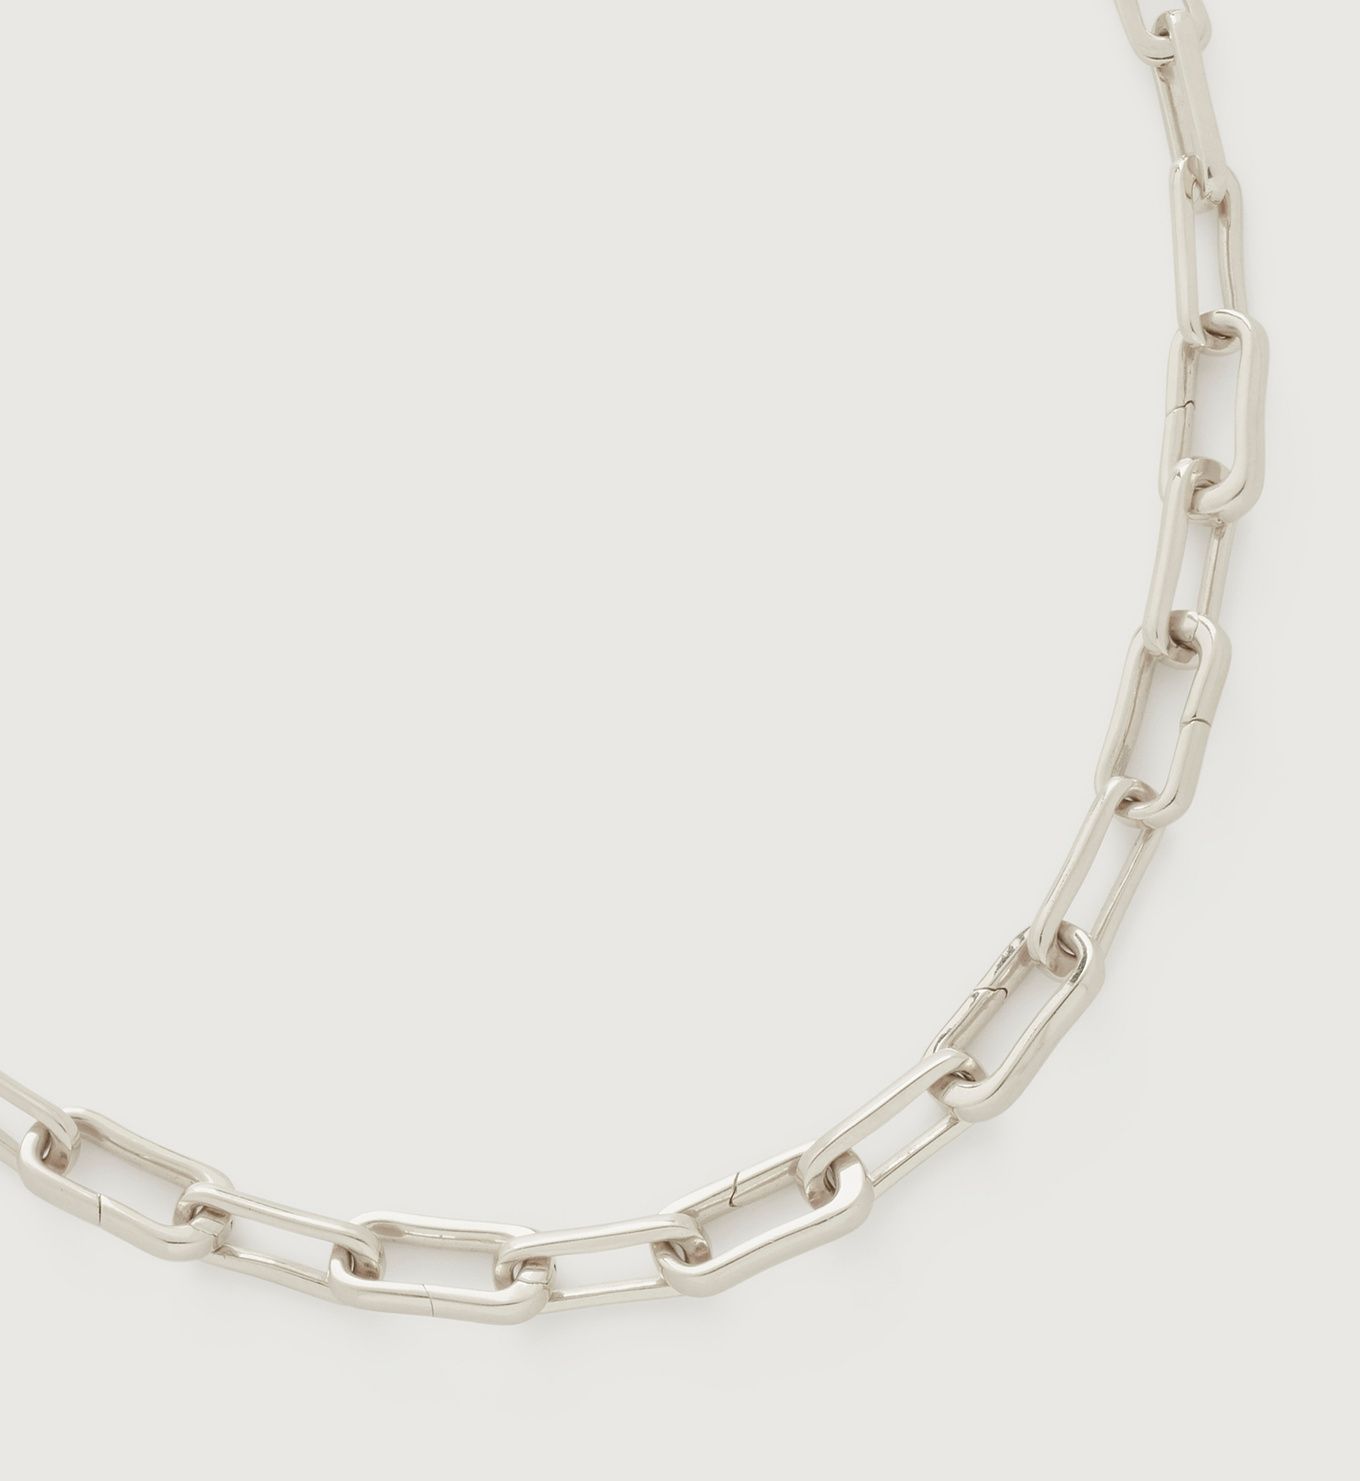 Alta Capture Charm Necklace Adjustable 48cm/19" | Monica Vinader (US)